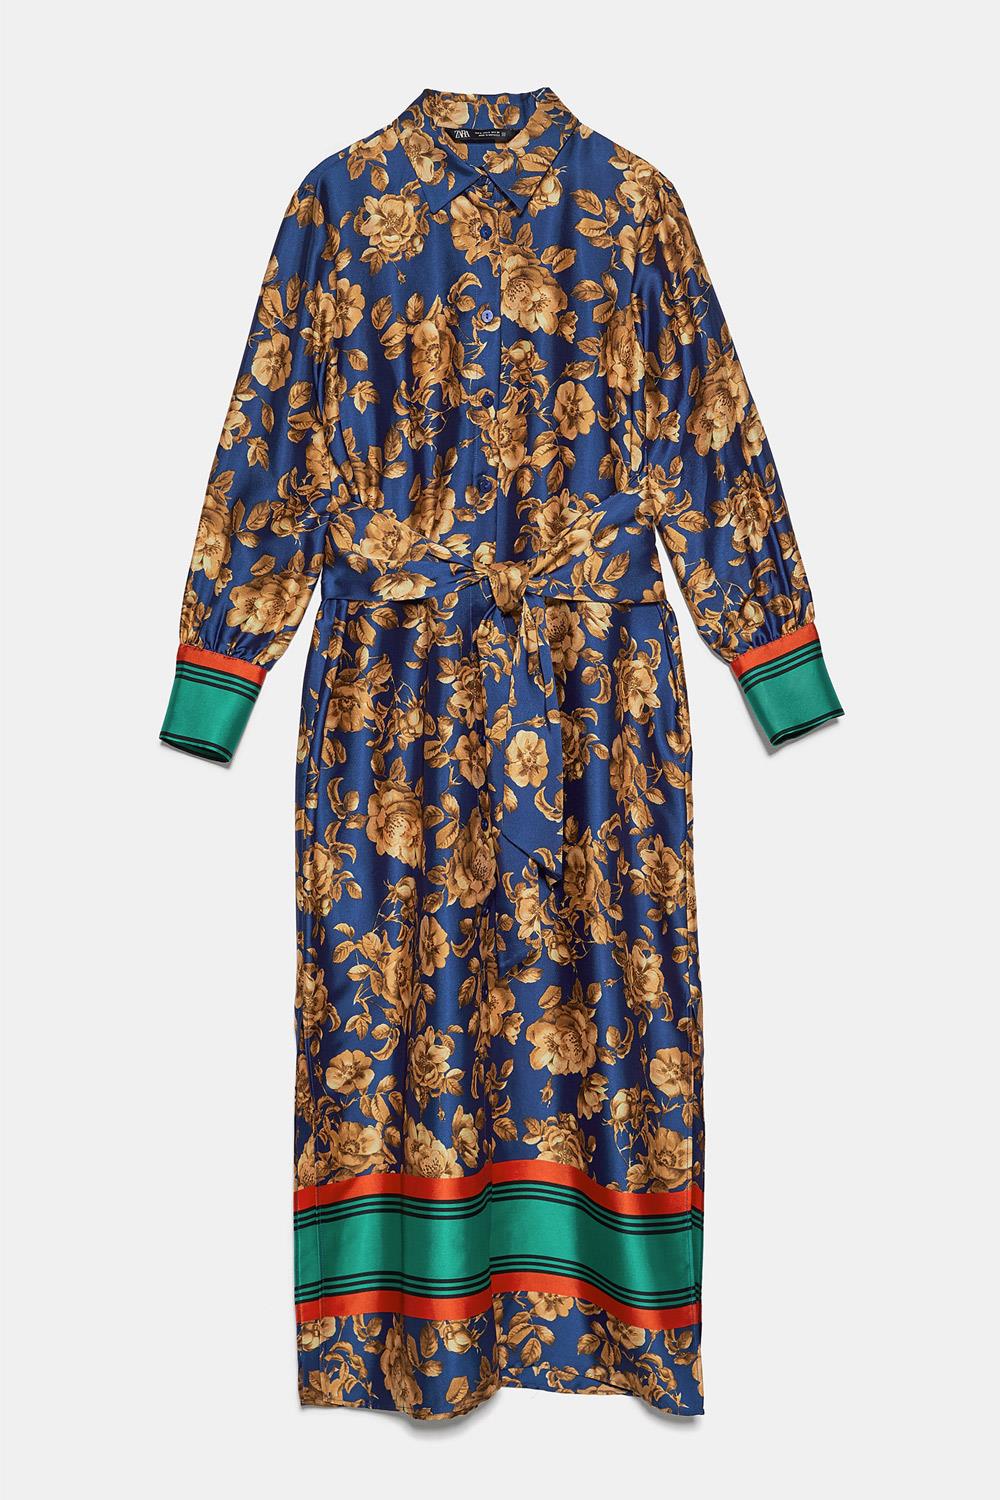 Tendencias otoño zara marta ortega vestido Zara, 39,95€